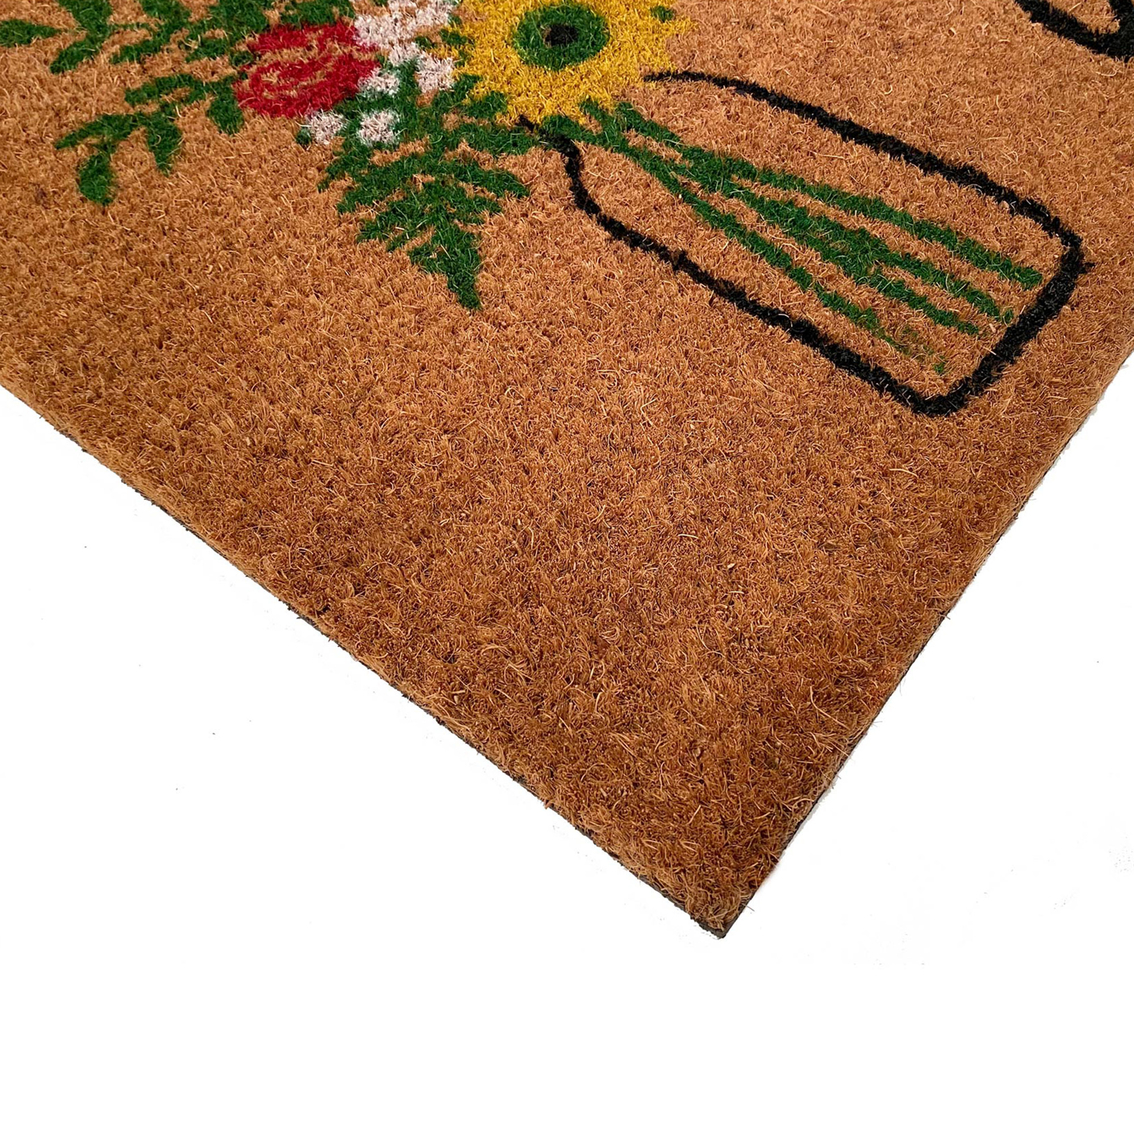 Calloway Mills 17 x 29 in. Summer Bouquet Doormat - Image 4 of 6